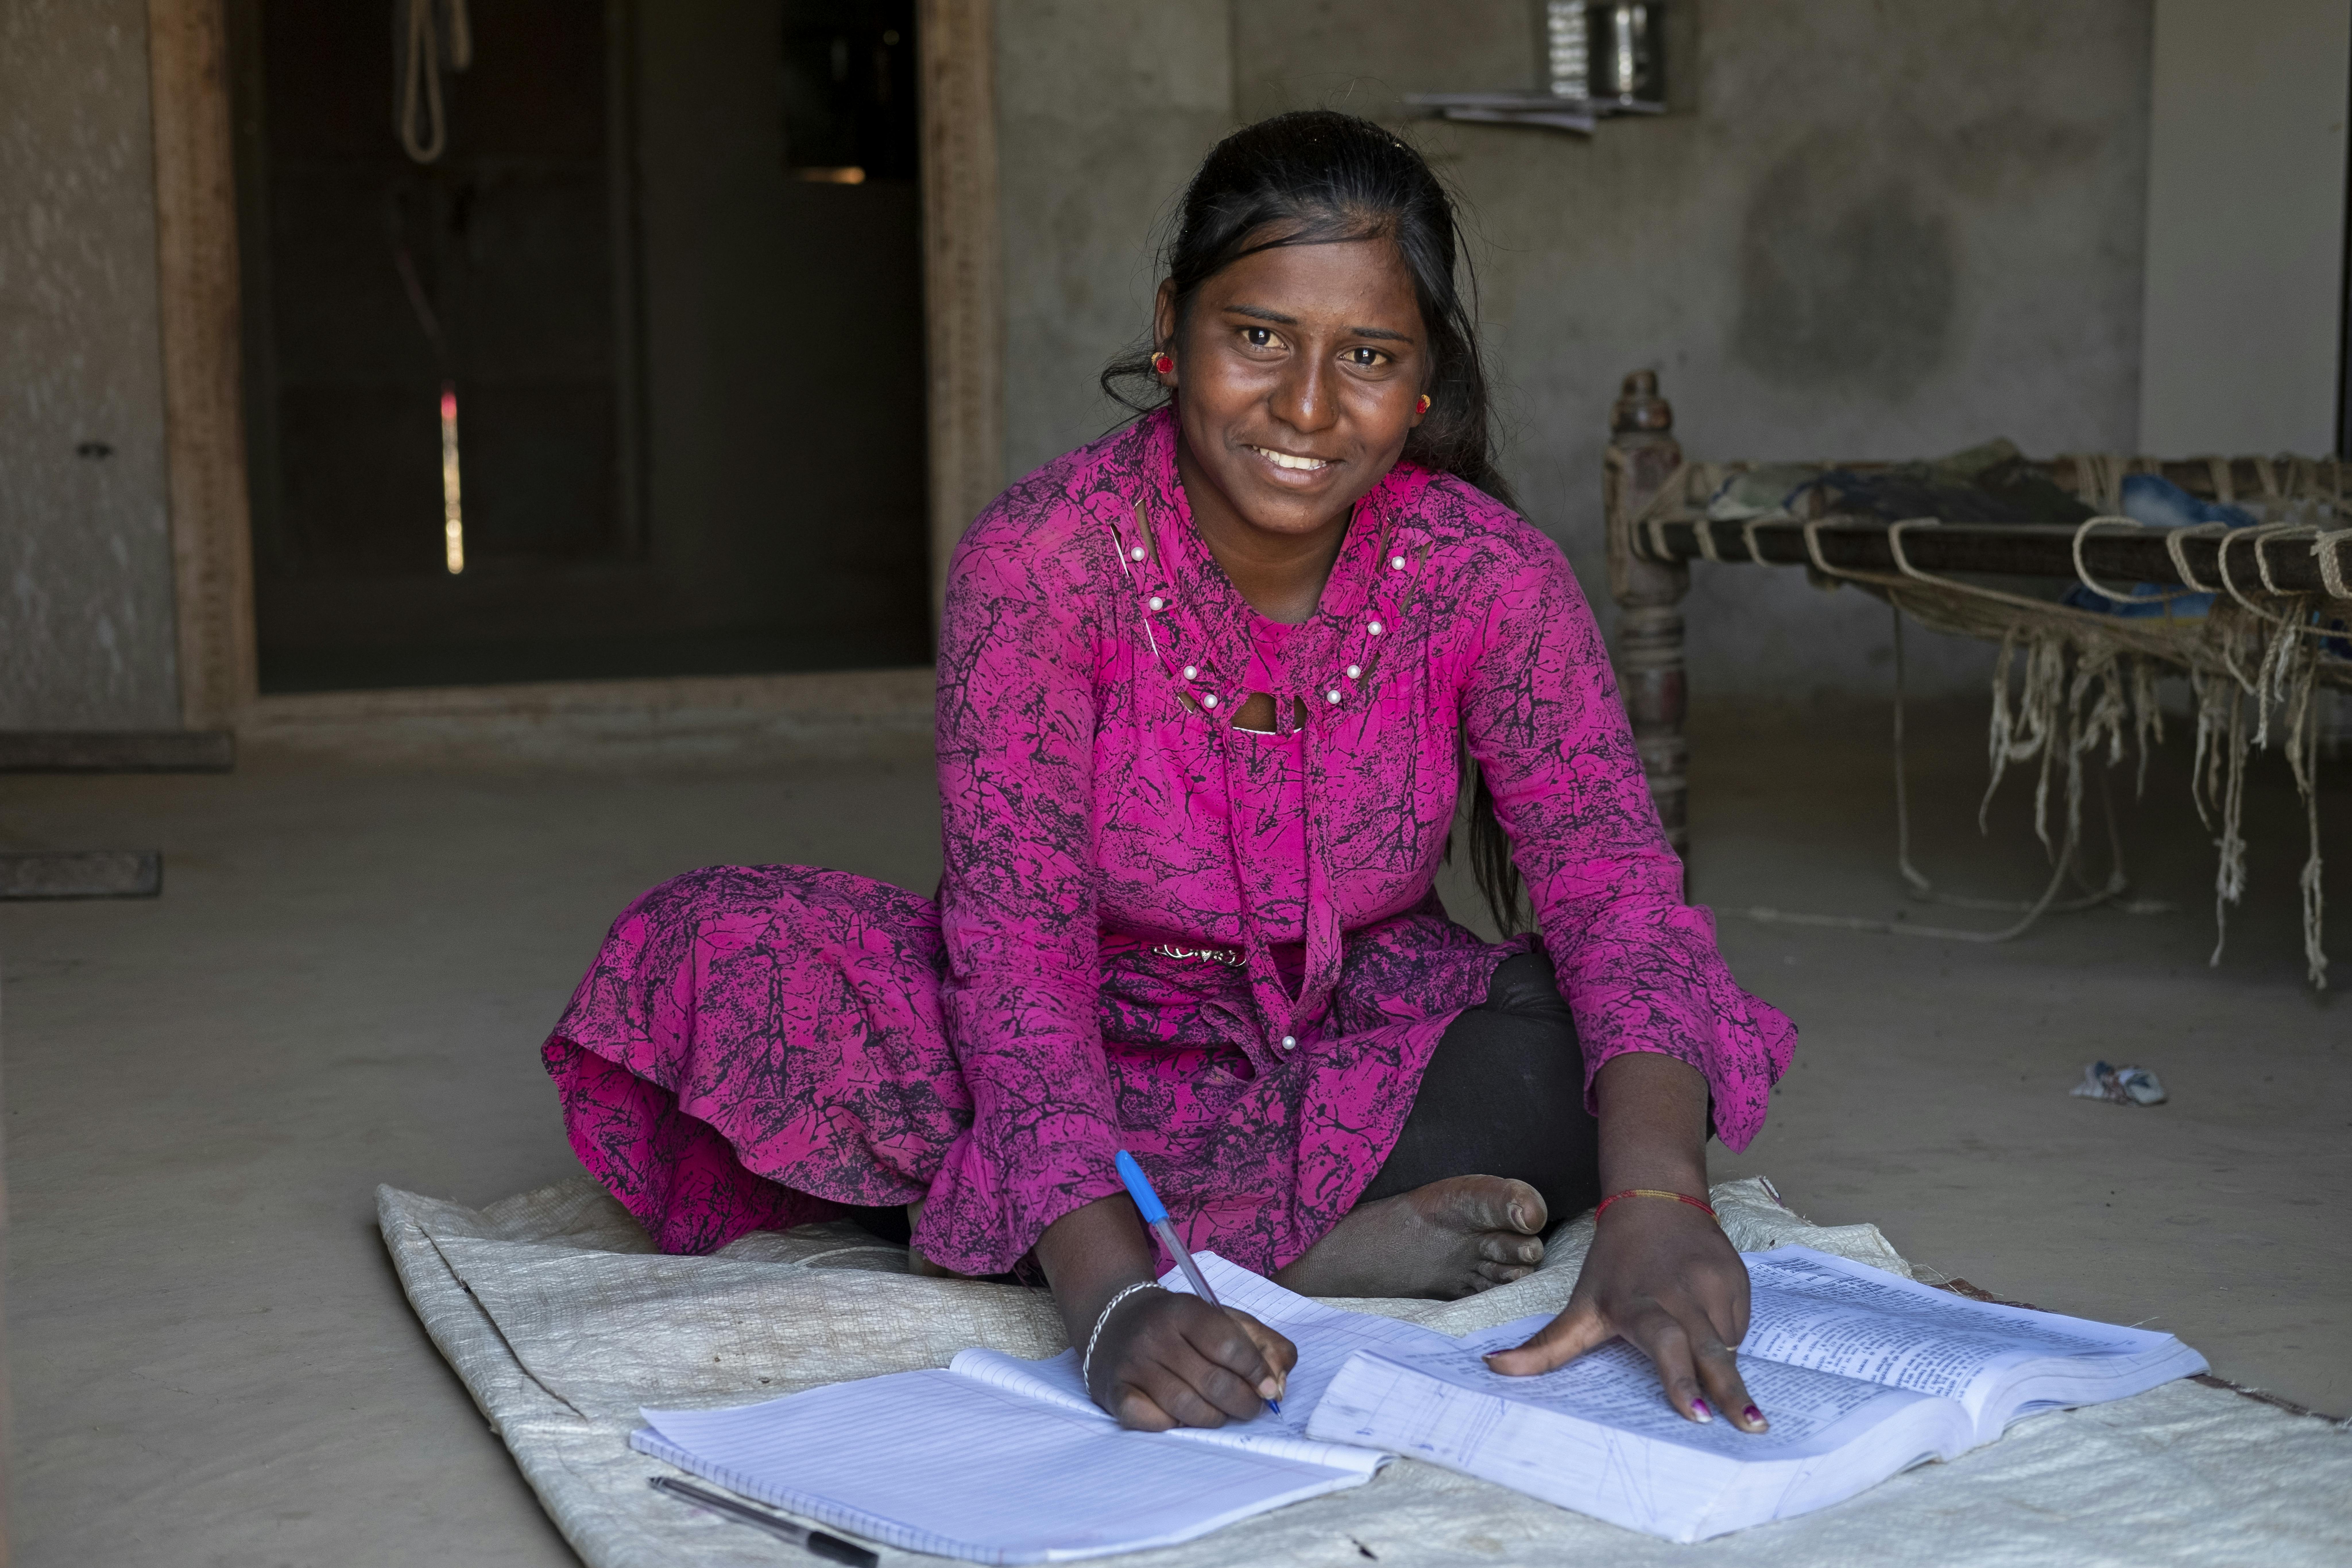 Indiaa, Anjali Dodiyar Meena 15 anni, studentessa della scuola secondaria sta studiando da casa. Purtoppo nessuno nella sua famiglia ha uno smartphone, ma lei non si è mai arresa e ha continuato a studiare